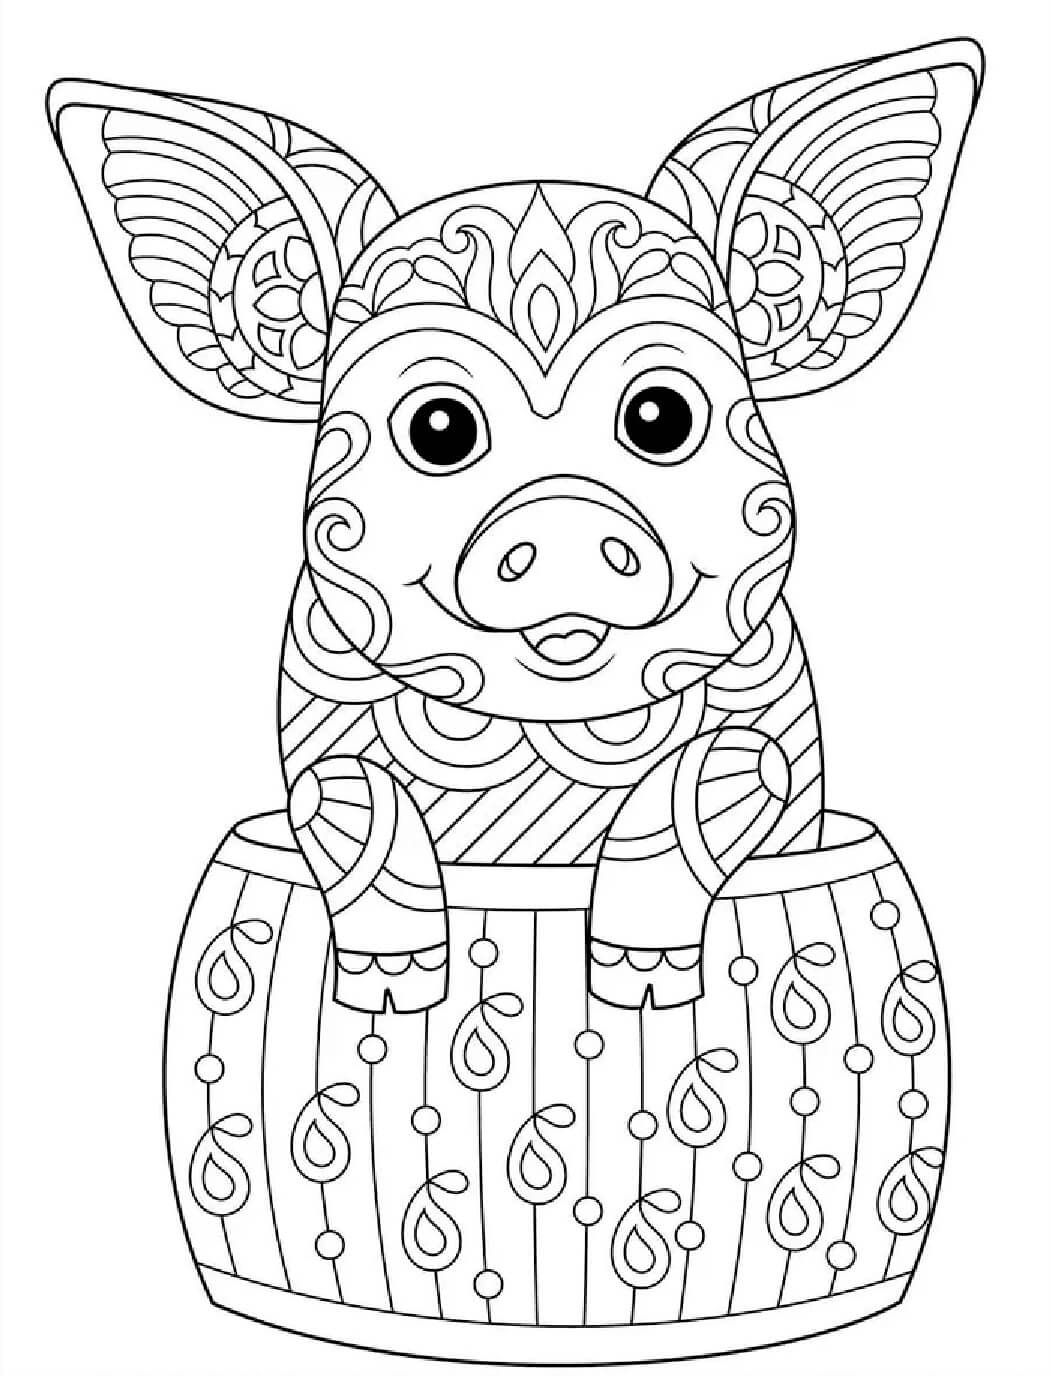 Mandala Pig Coloring Page - Sheet 1 Mandalas